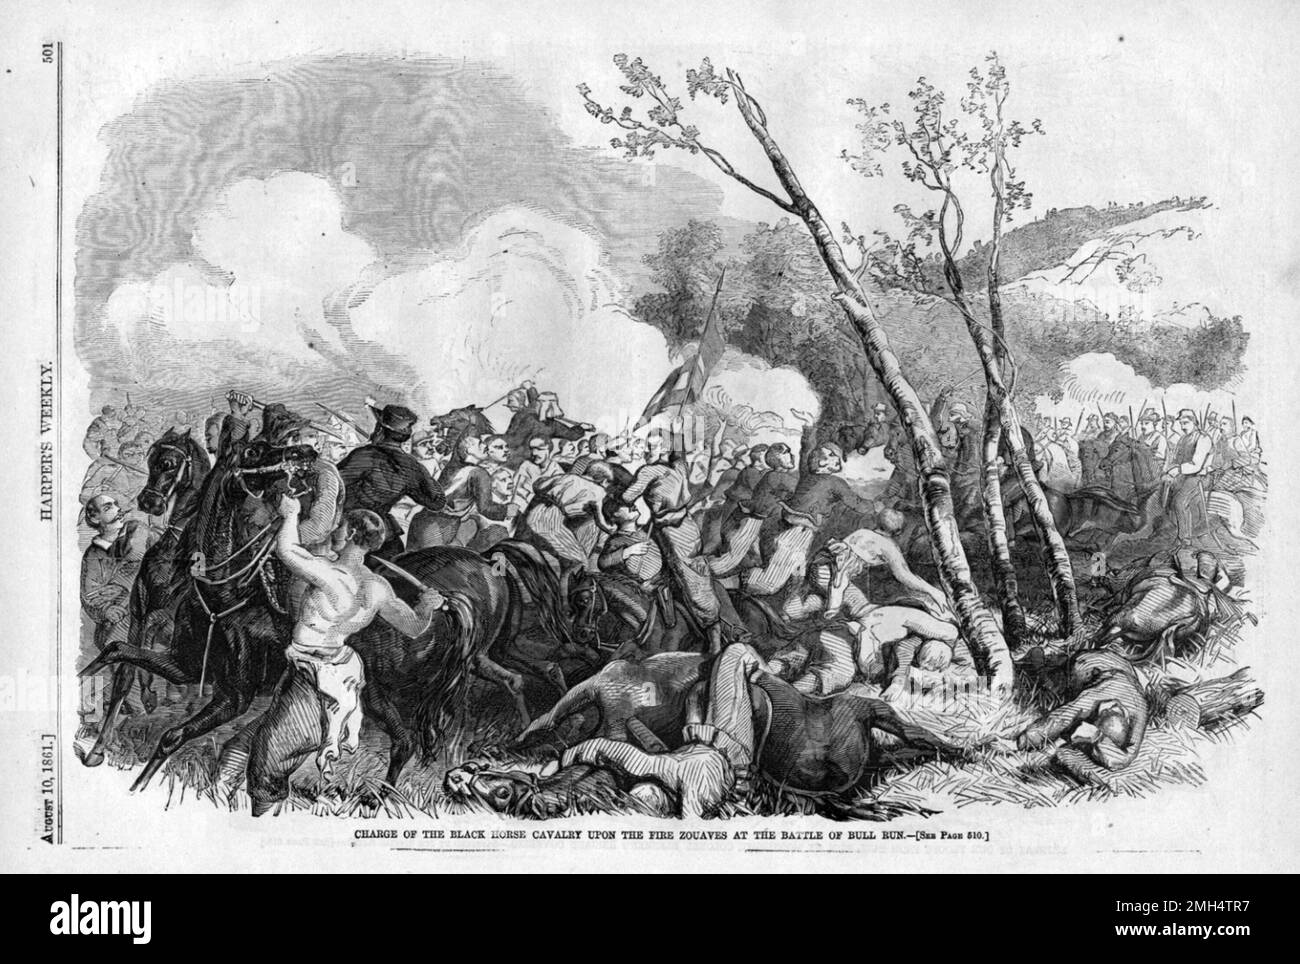 La Primera Batalla de Bull Run (el nombre utilizado por las fuerzas de la Unión), también conocida como la Batalla del Primer Manassas fue la primera gran batalla entre las fuerzas unionistas y confederadas durante la Guerra Civil Americana. Fue combatido el 21 de julio de 1861 en Virginia Occidental. Fue ganado por las fuerzas confederadas bajo Joseph Johnston y PGT Beauregard. Fue en esta batalla que Thomas Jackson obtuvo su conocido (y excelente) apodo Stonewall Kackson.Charge de la Caballería de Caballo Negro sobre los Zouaves de Fuego en la Batalla de Bull Run Foto de stock